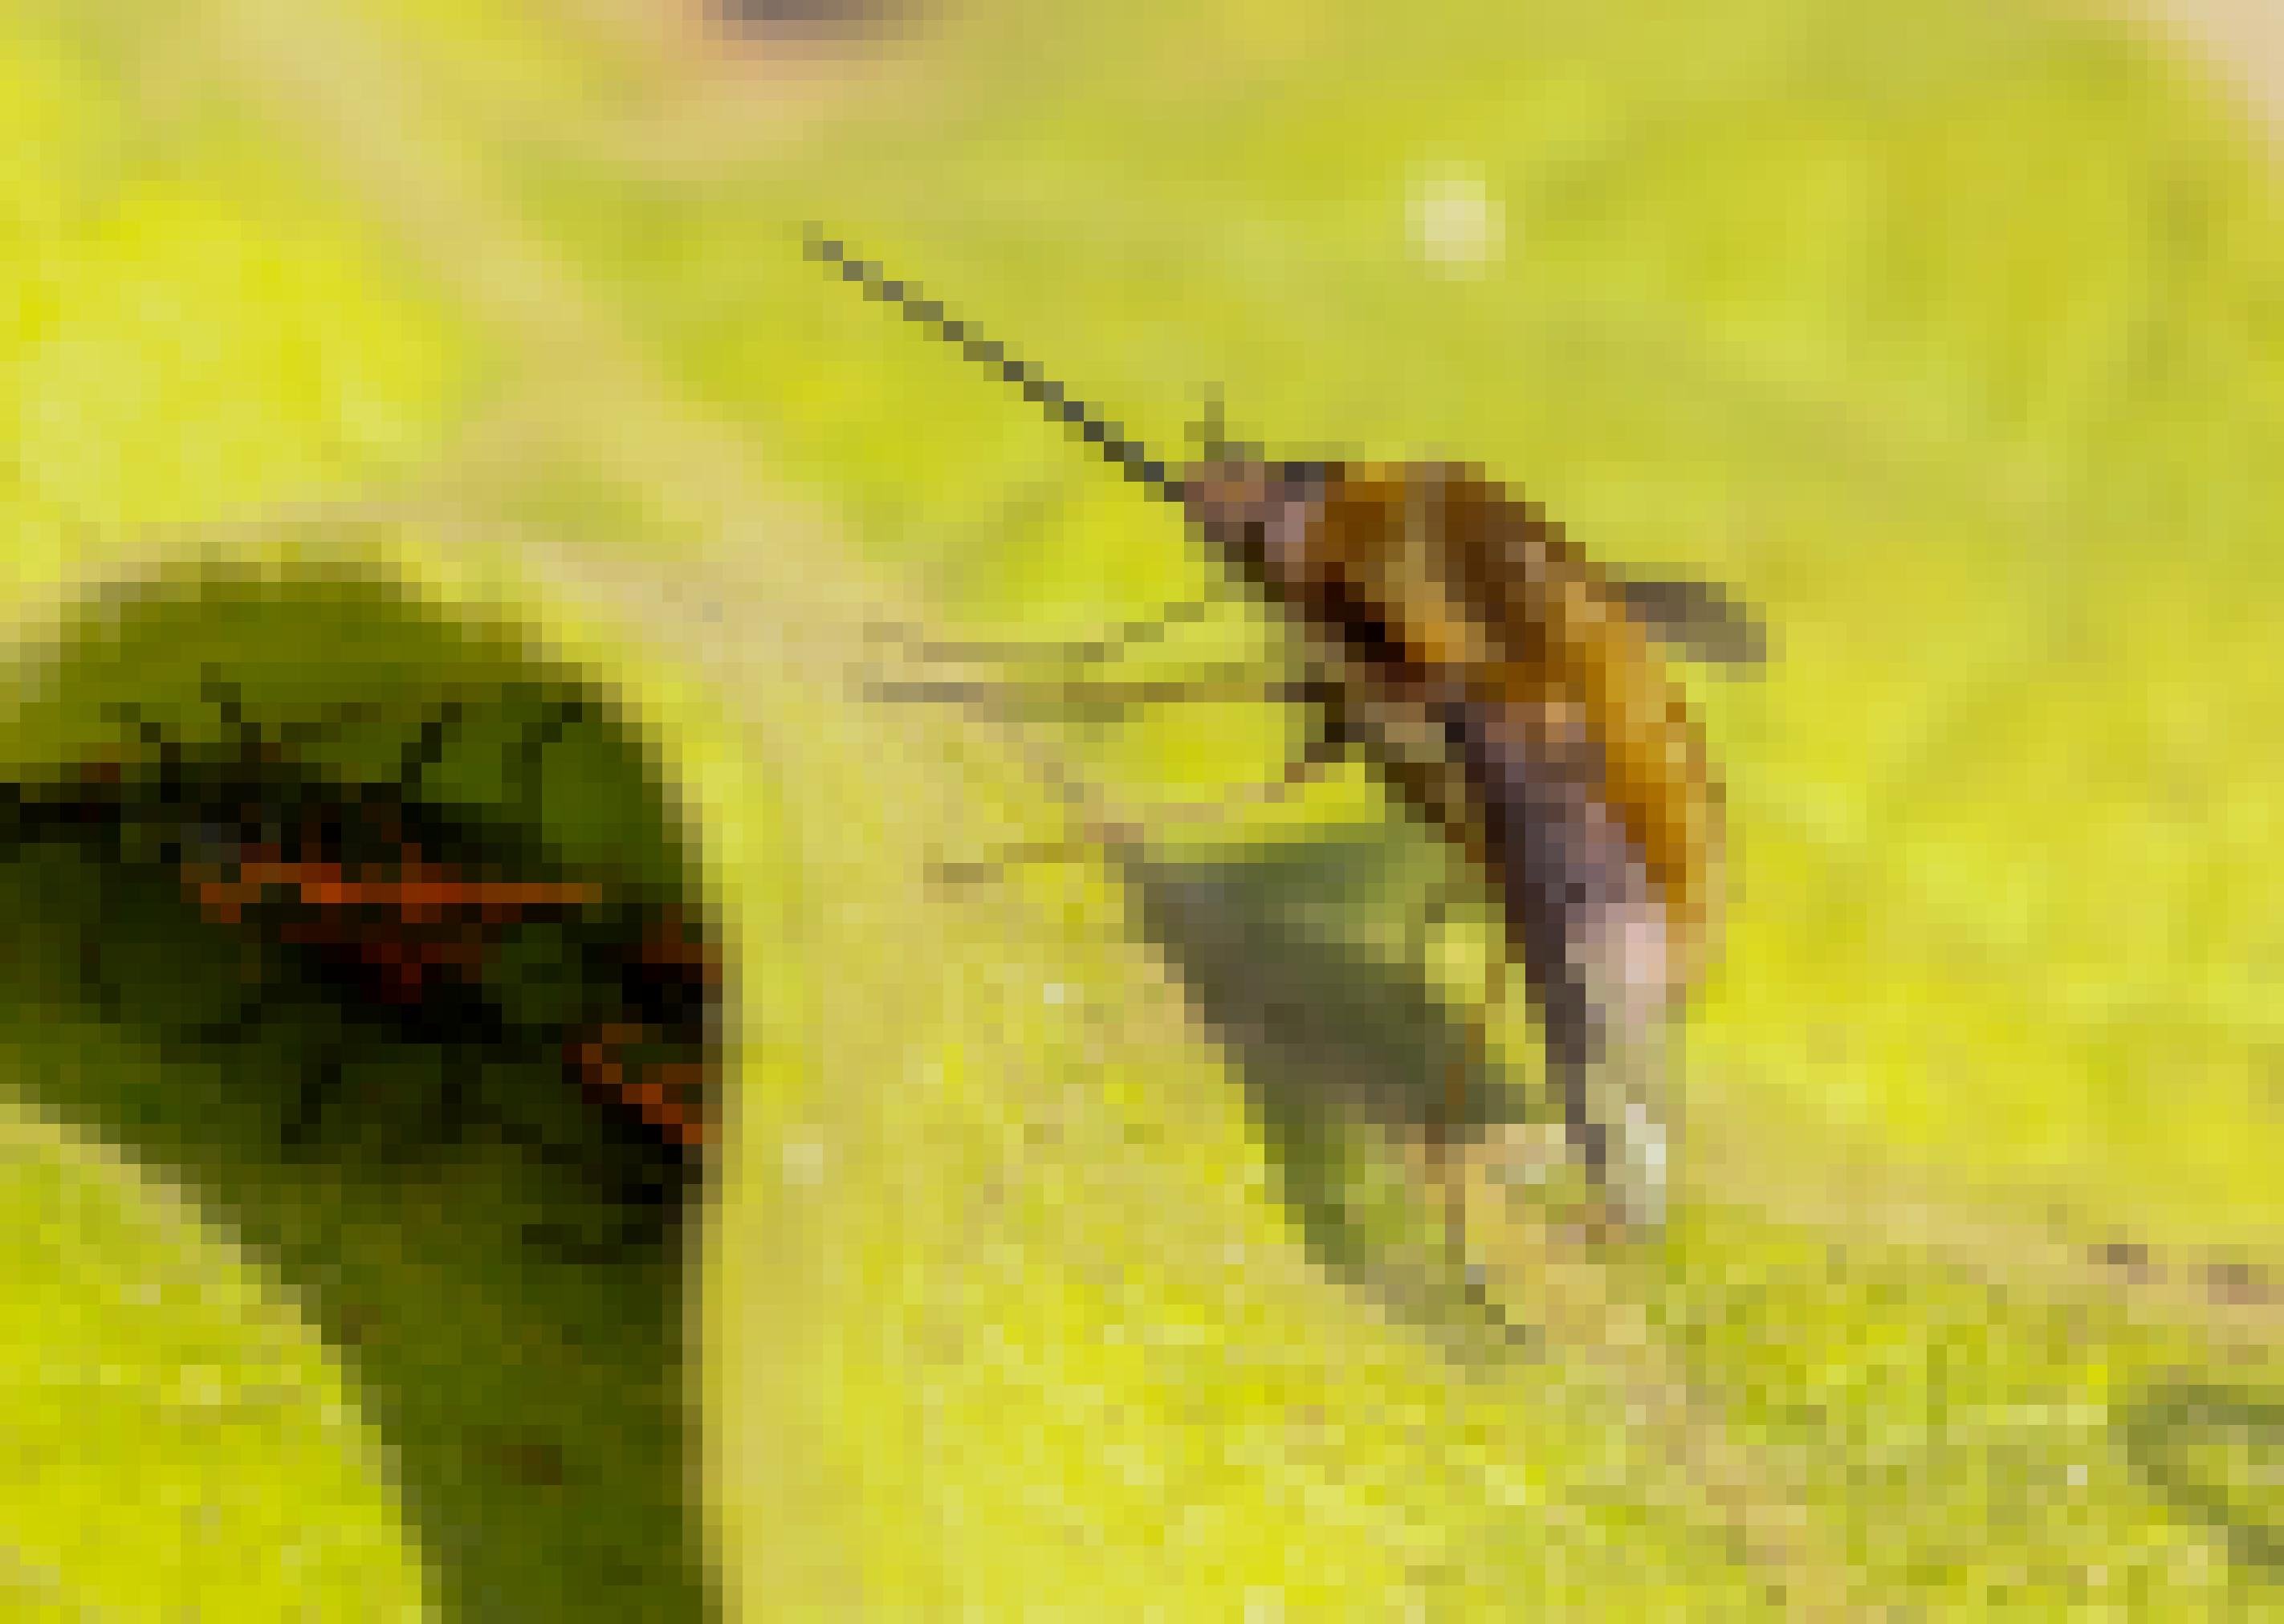 Ein Insekt mit beigem Pelz und langem Rüssel sitzt auf einem Blatt. Darunter verstecken sich rot-schwarze Wanzen.